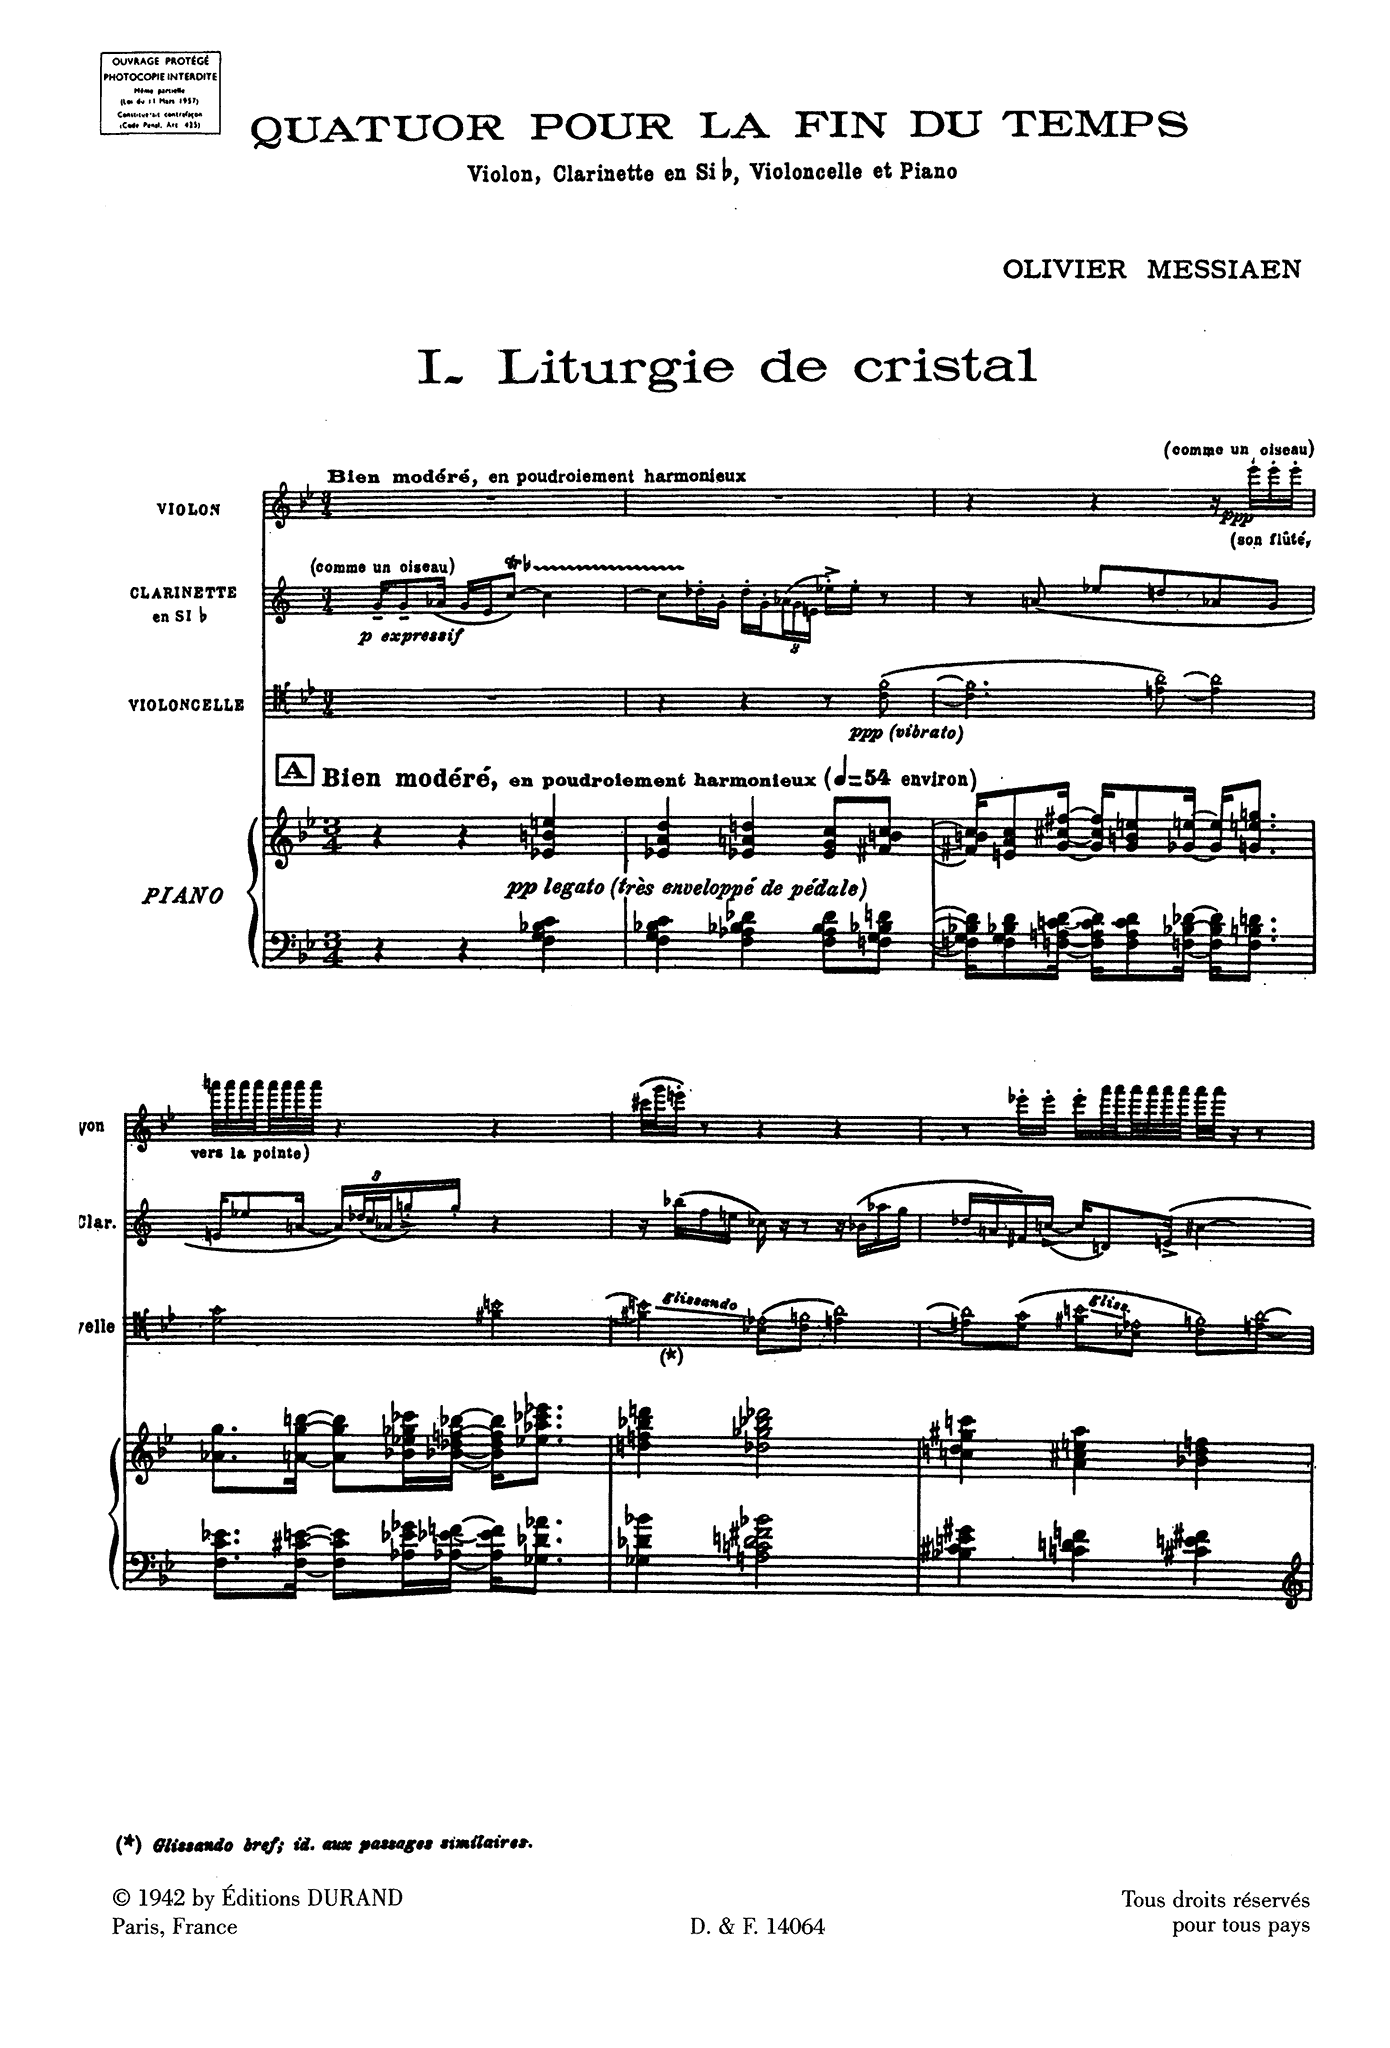 Messiaen Quatuor pour la fin du temps mini score - Movement 1